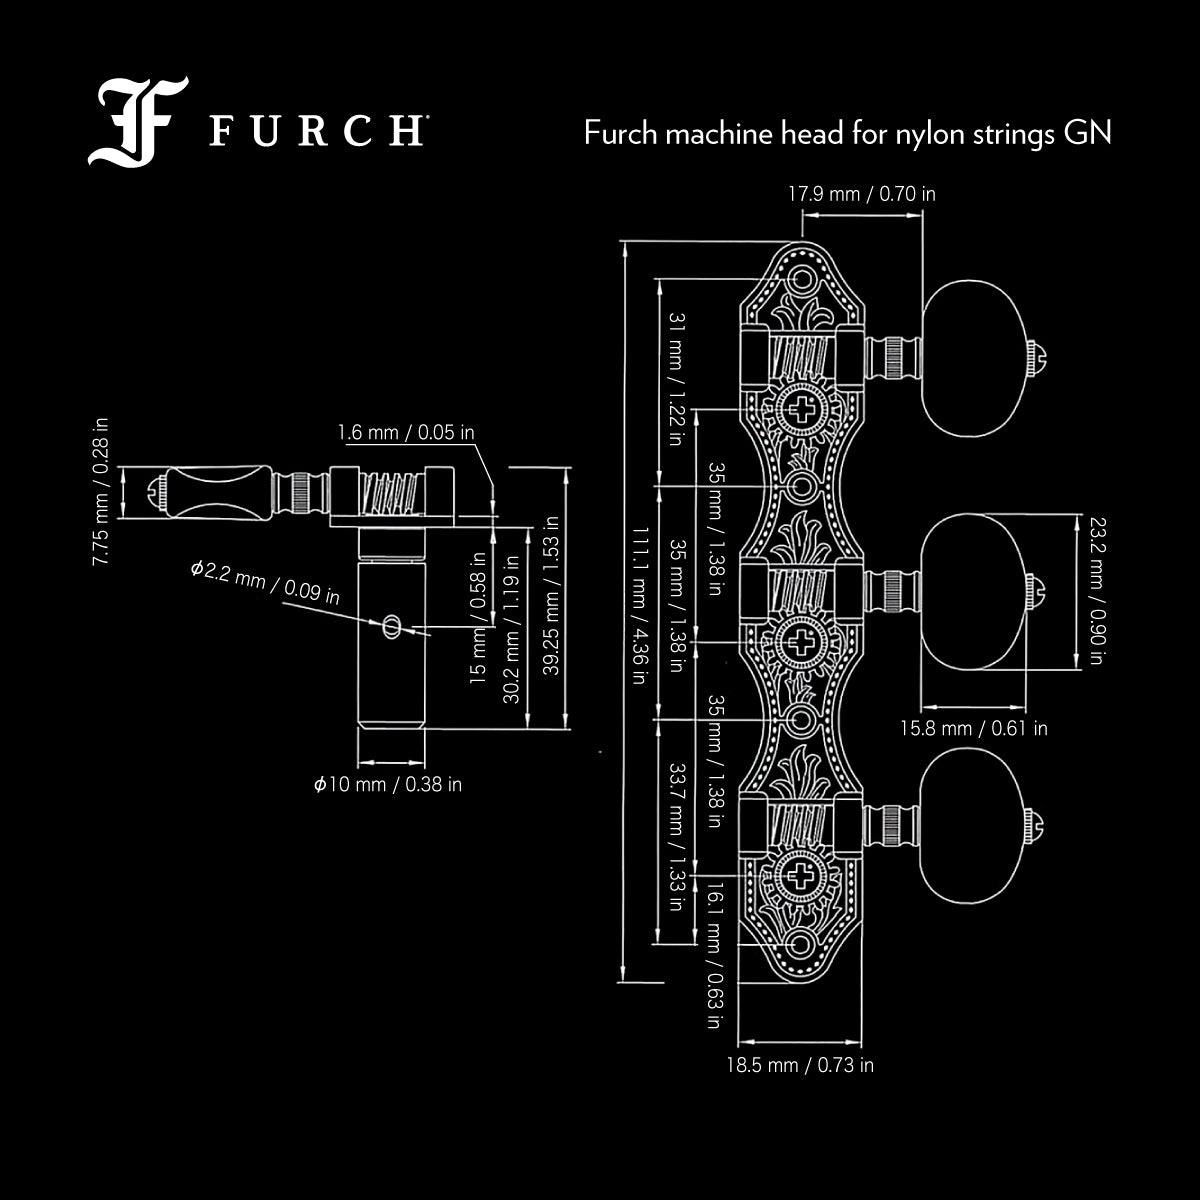 Dimensions Furch machine head GN